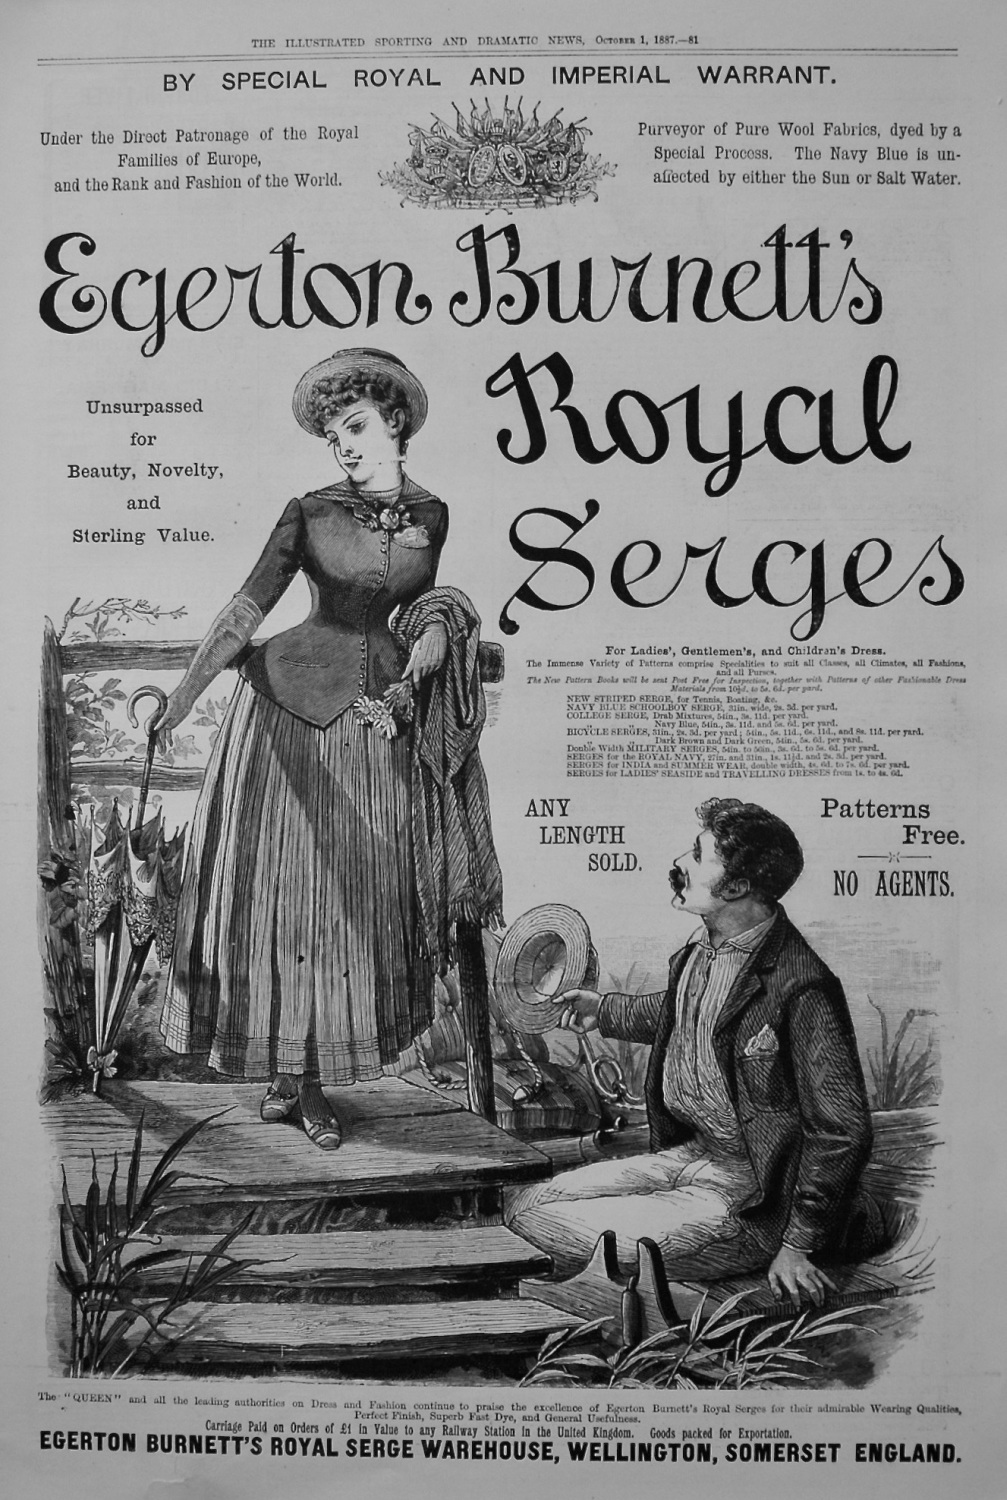 Egerton Burnett's Royal Serges. 1887